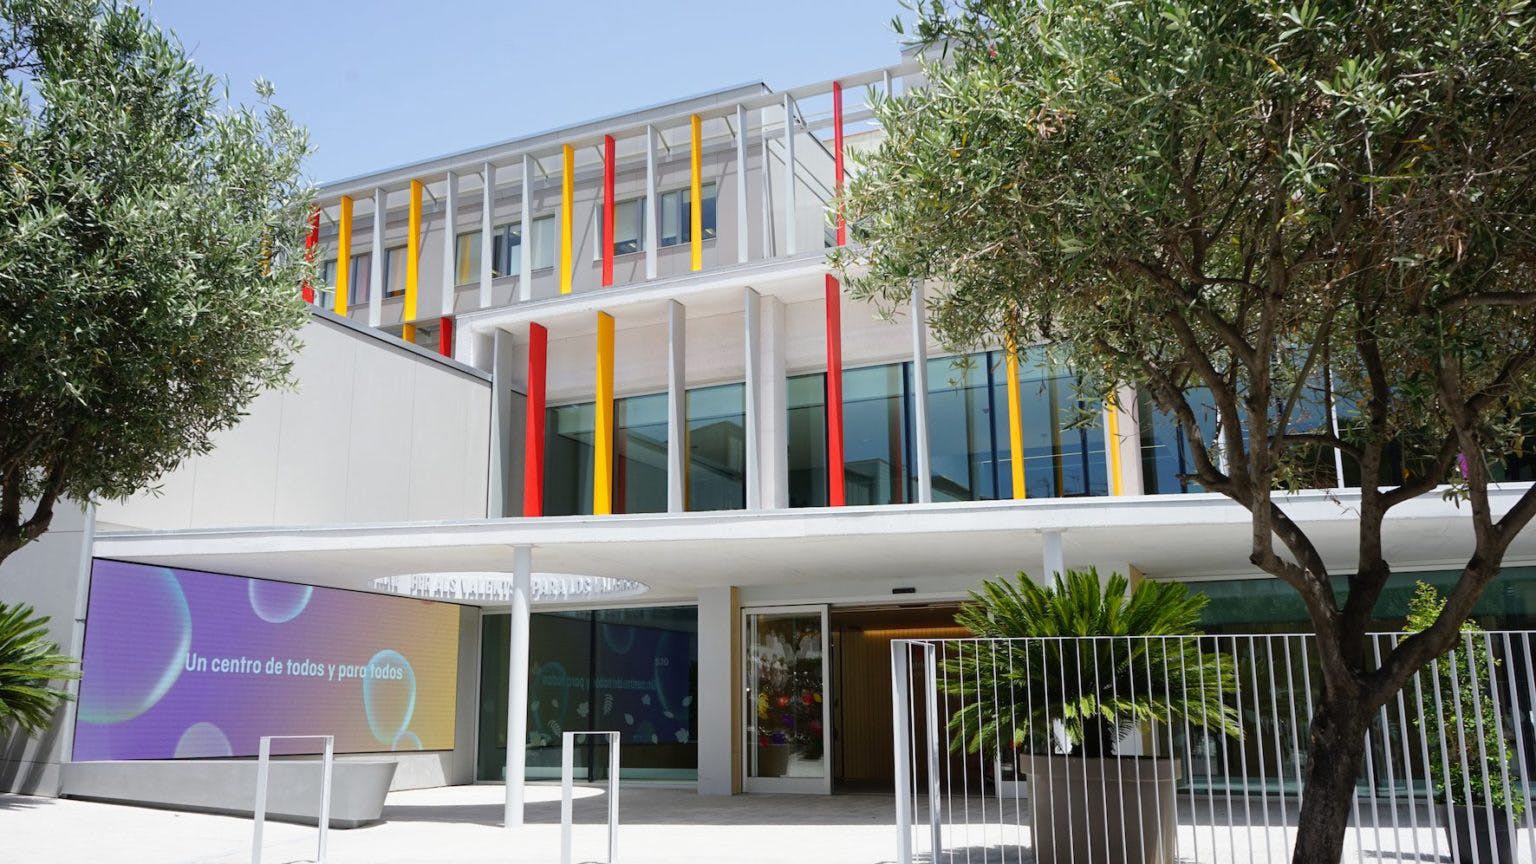 Numero immagine 32 della sezione corrente di {{Cosentino donates the façade cladding for the first monographic paediatric oncological centre in Spain}} di Cosentino Italia